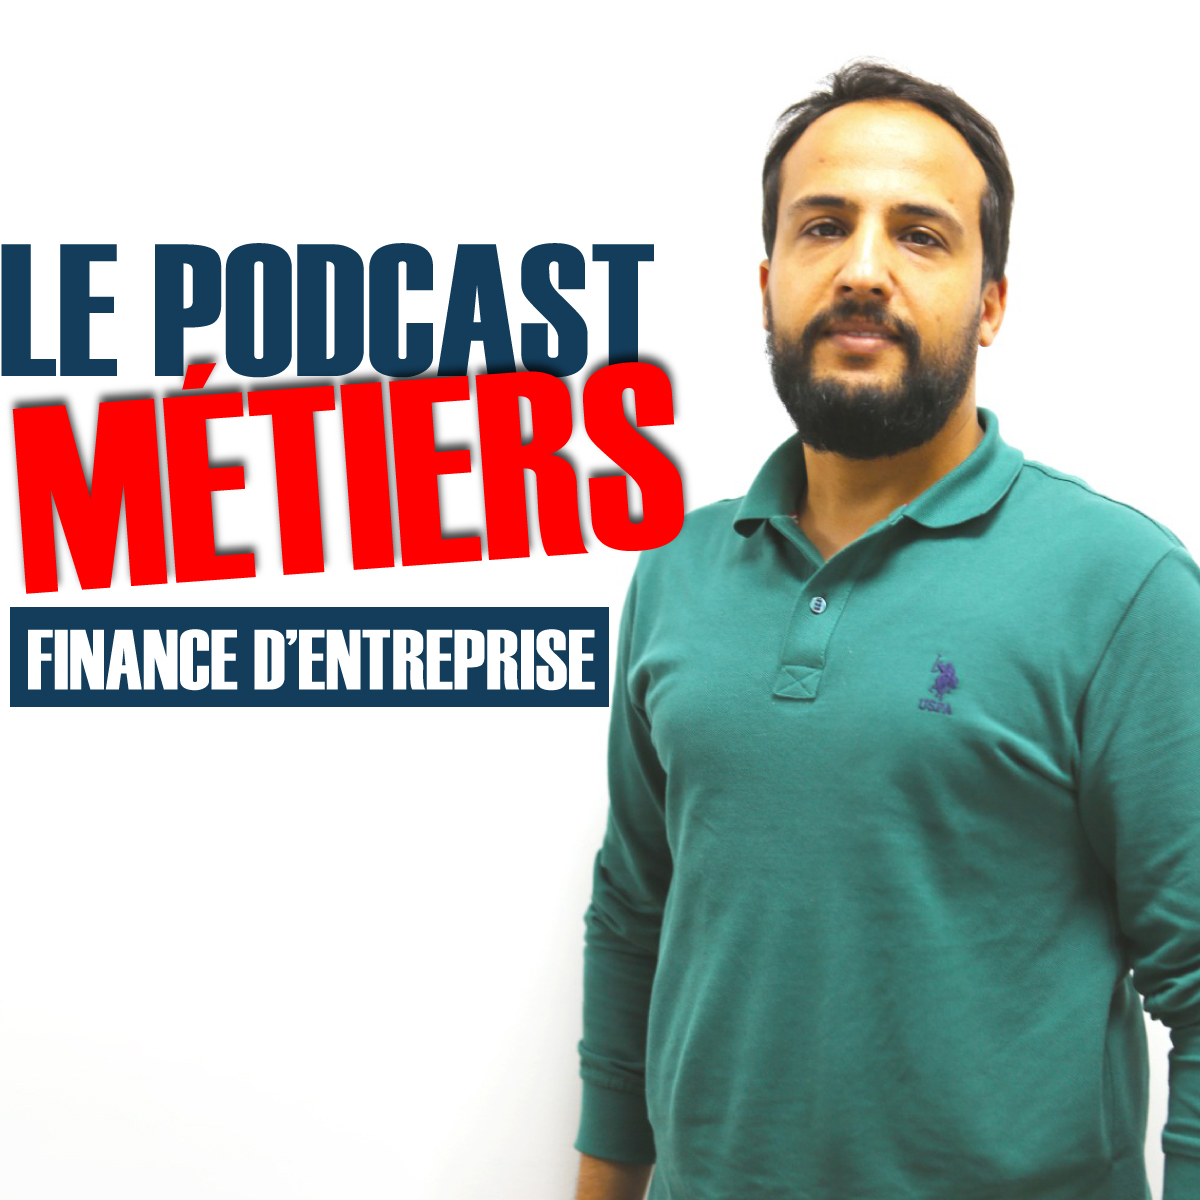 Podcast métier - Finance d'entreprise